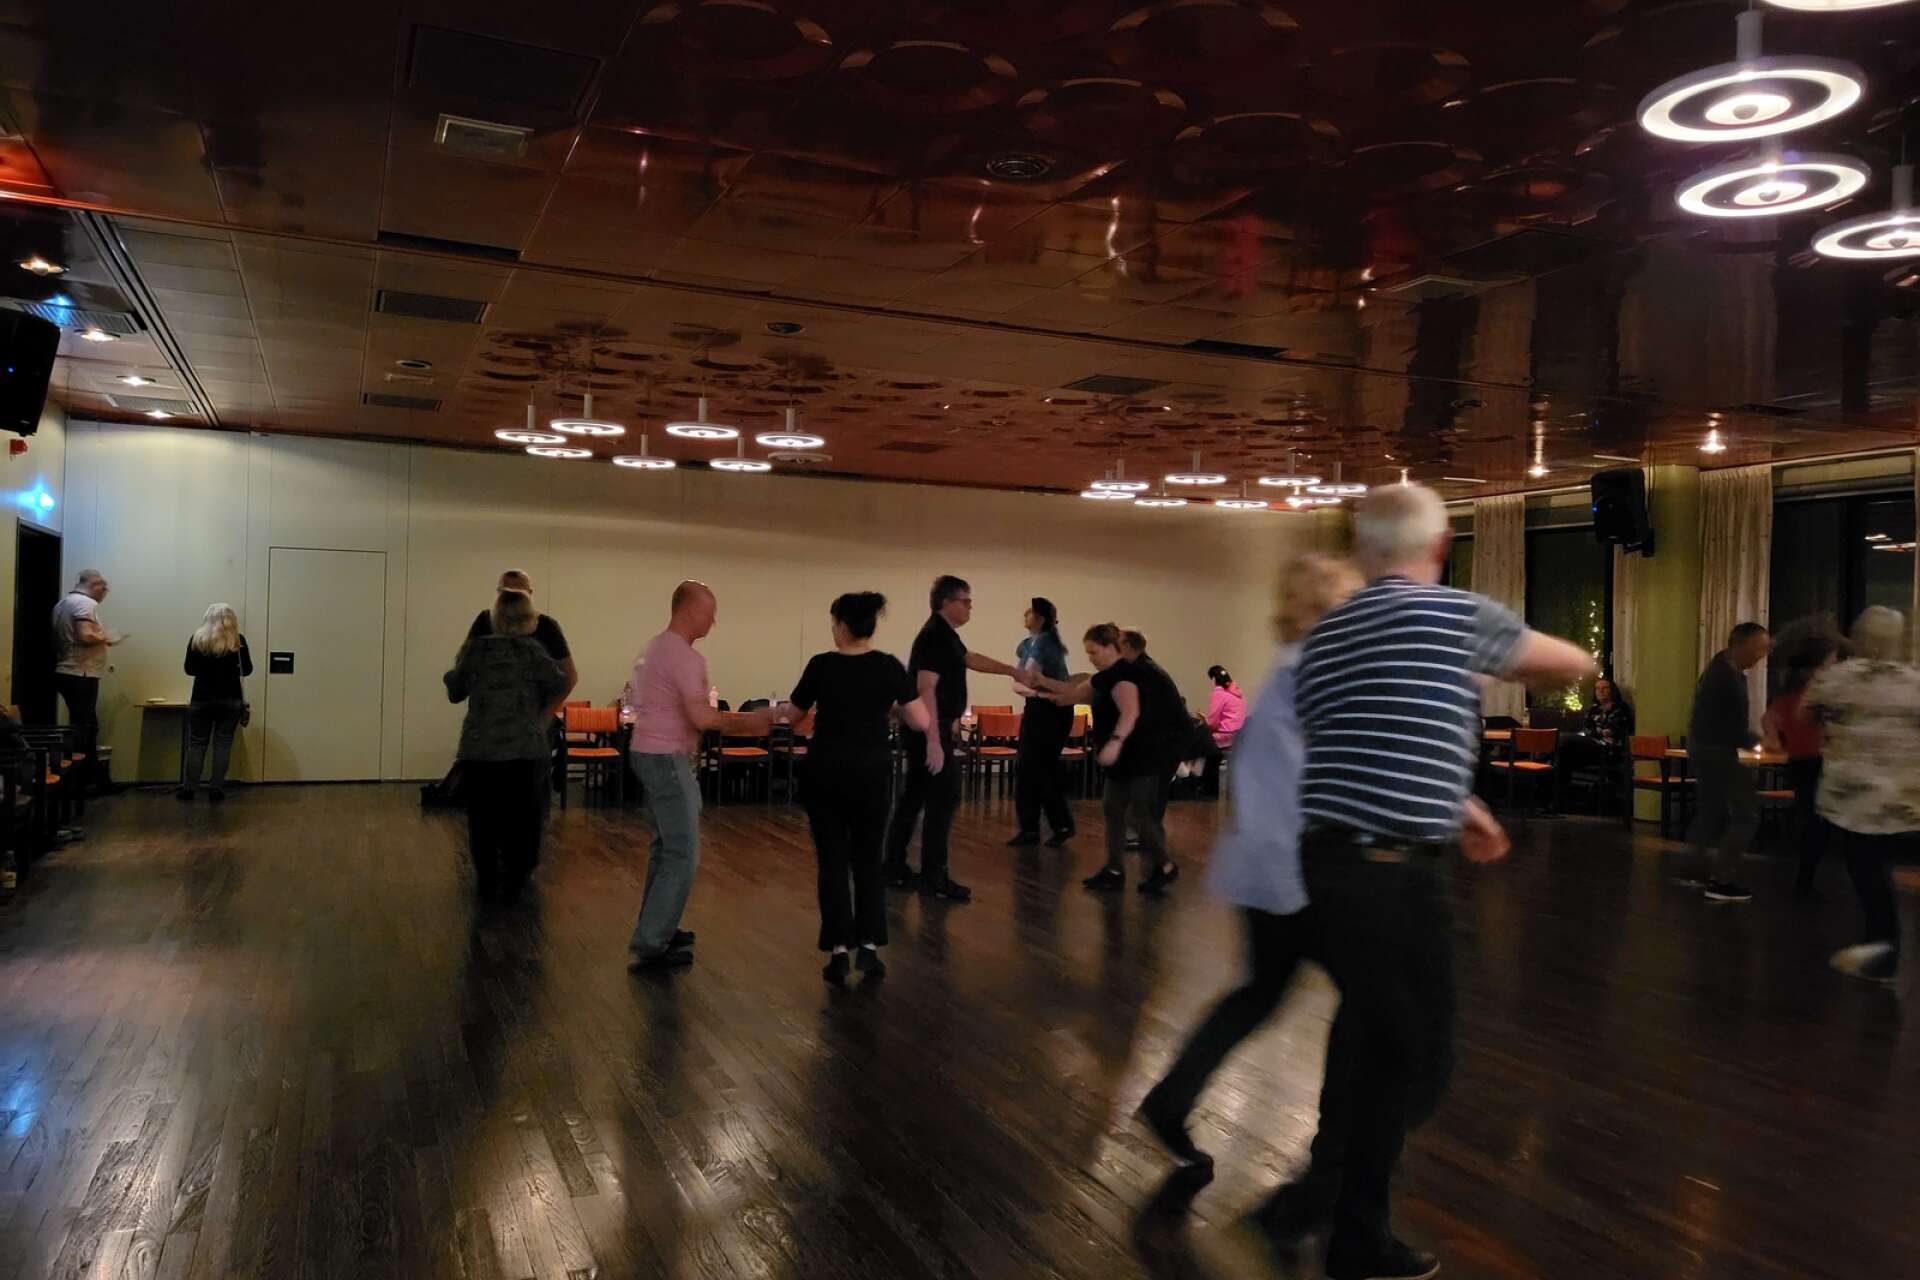 Medlemmarna i dansföreningen Dans för sköjs skull i Hällefors träffas varje måndga för att dans och umgås.